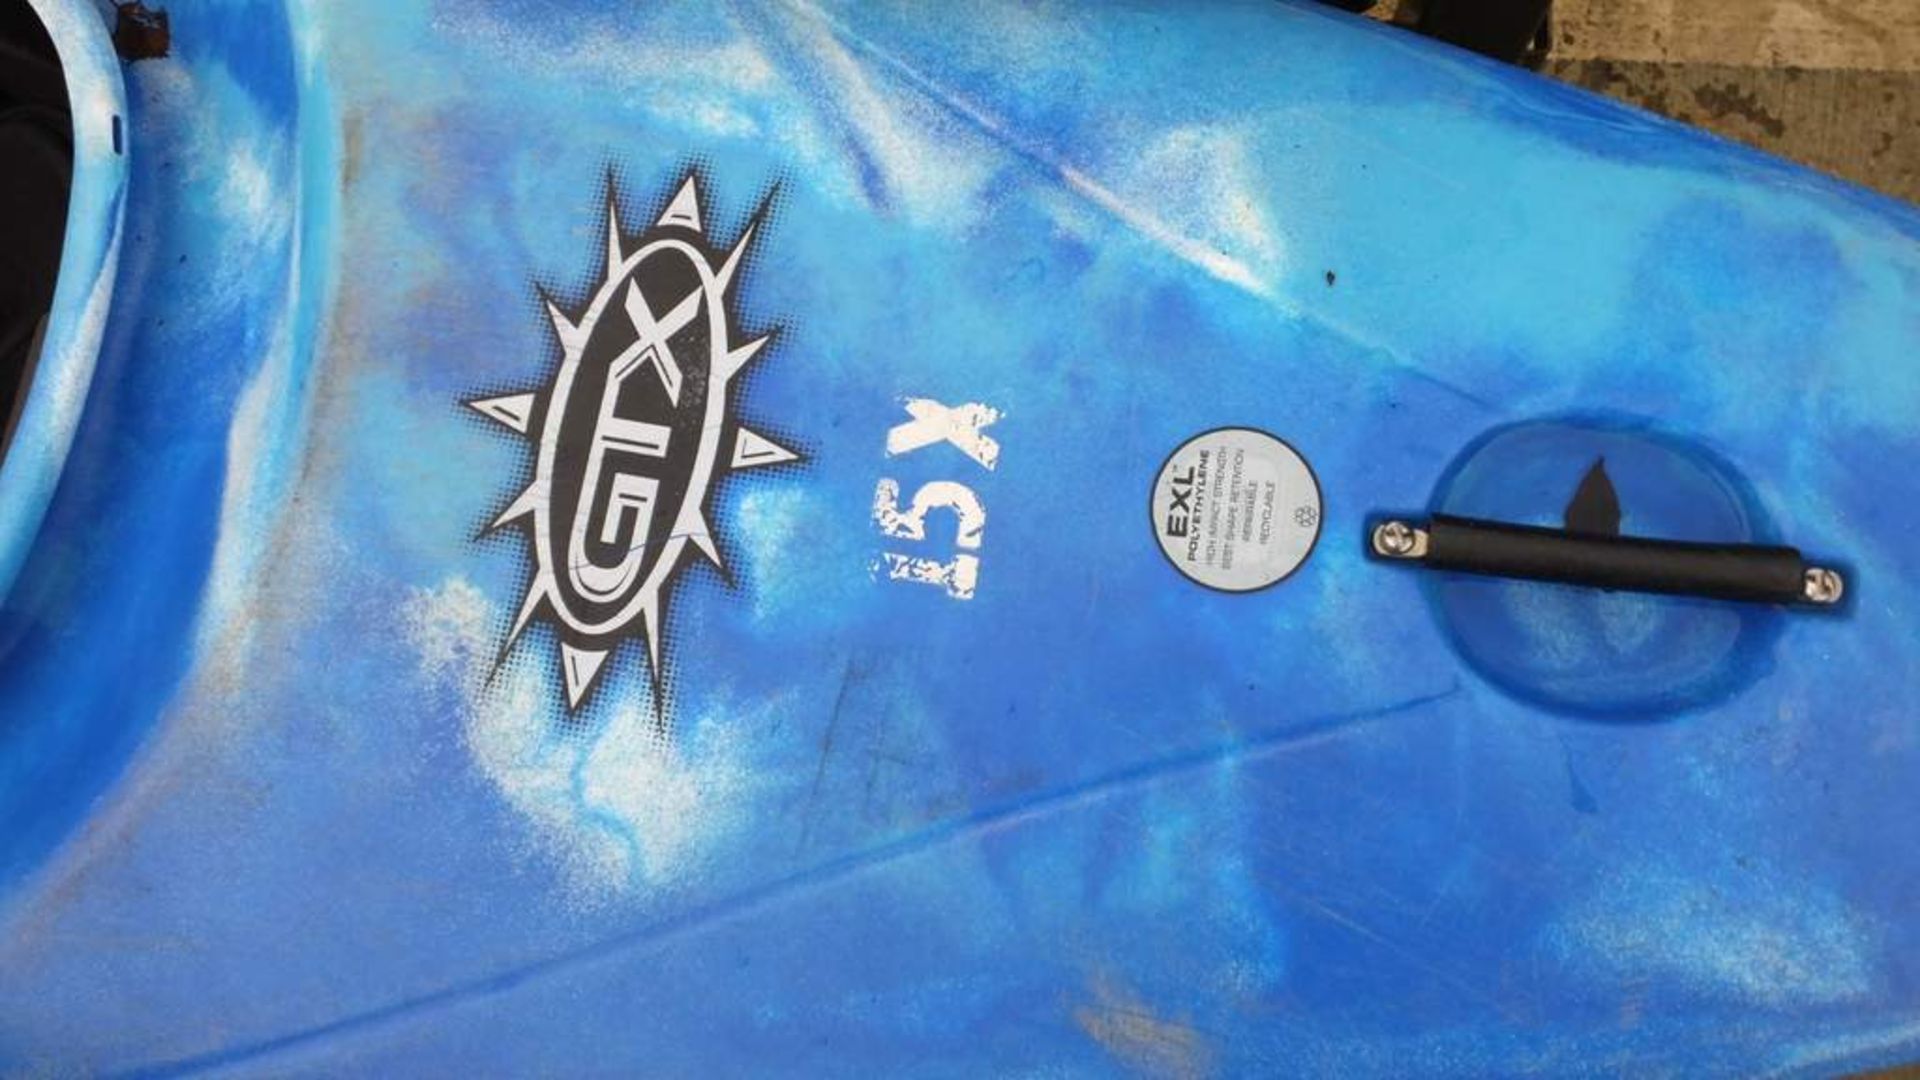 Dagger GTX kayak - Image 2 of 3